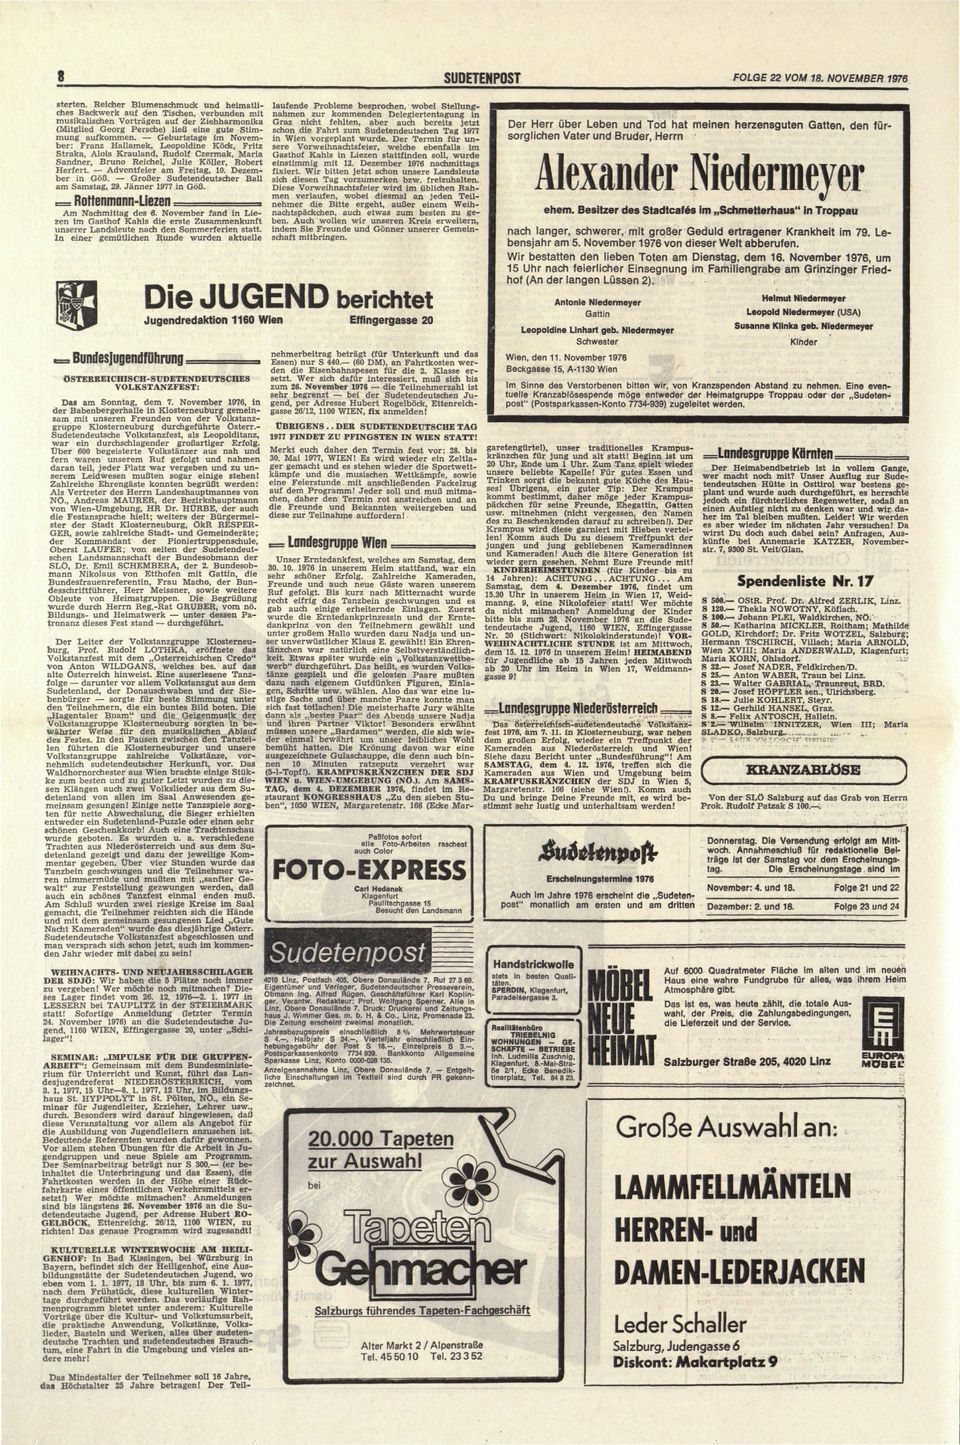 Dezember in Goß. Großer Sudetendeutscher Ball am Samstag, 29. Jänner 1977 in Goß.